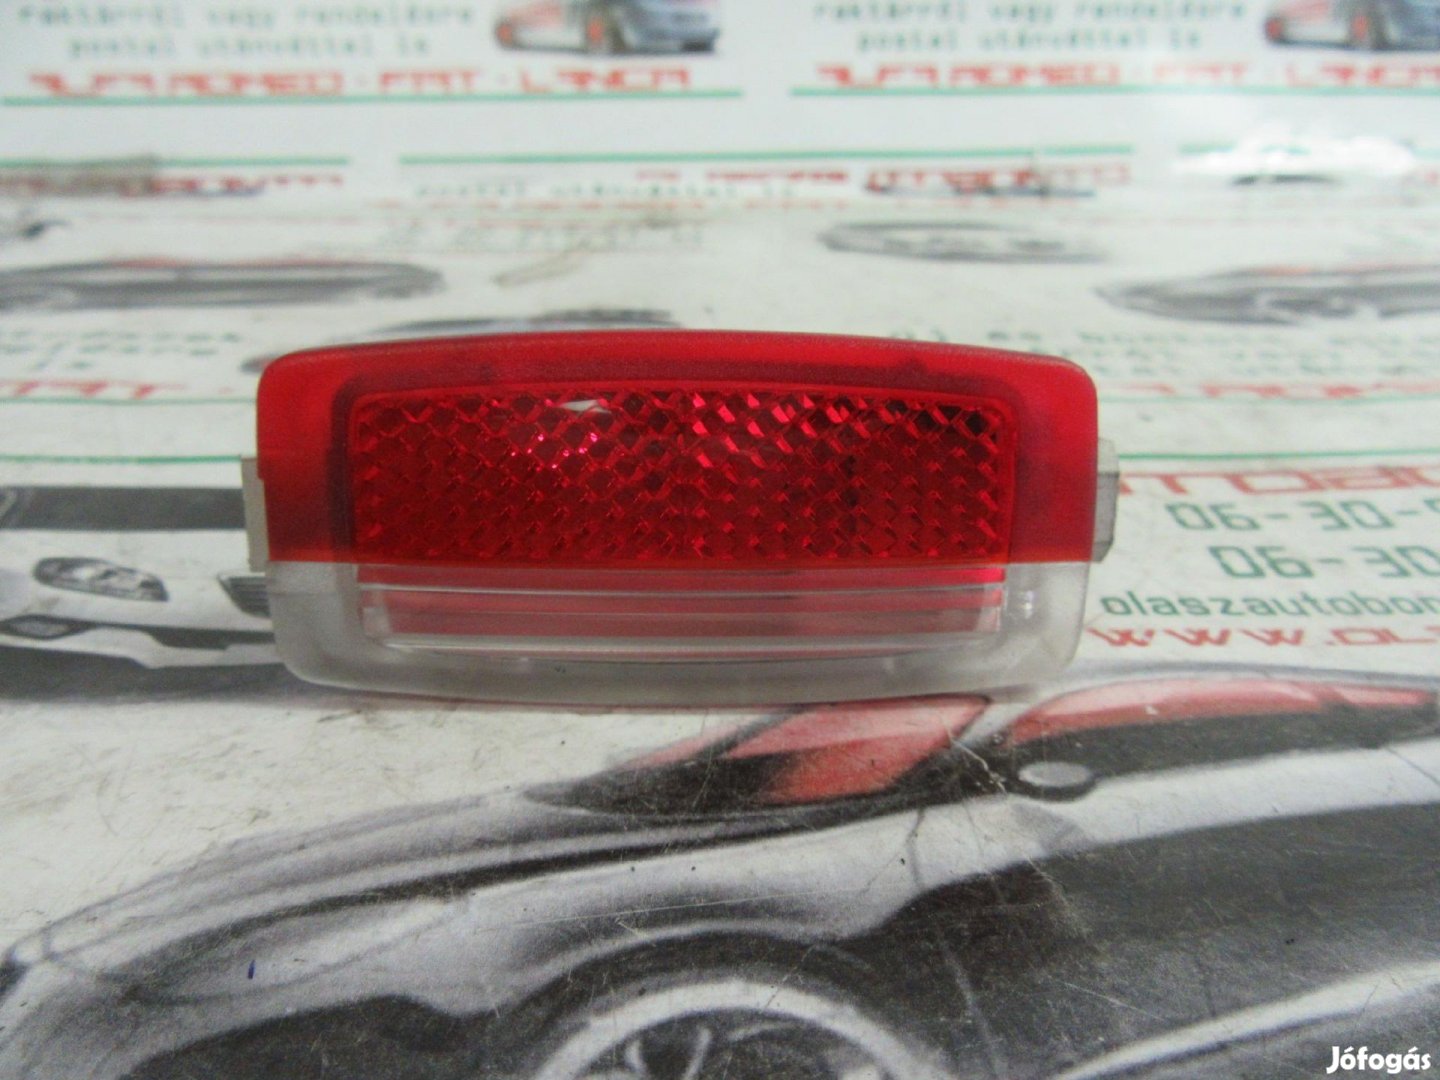 Fiat Stilo 46799513 számú ajtókárpit lámpa